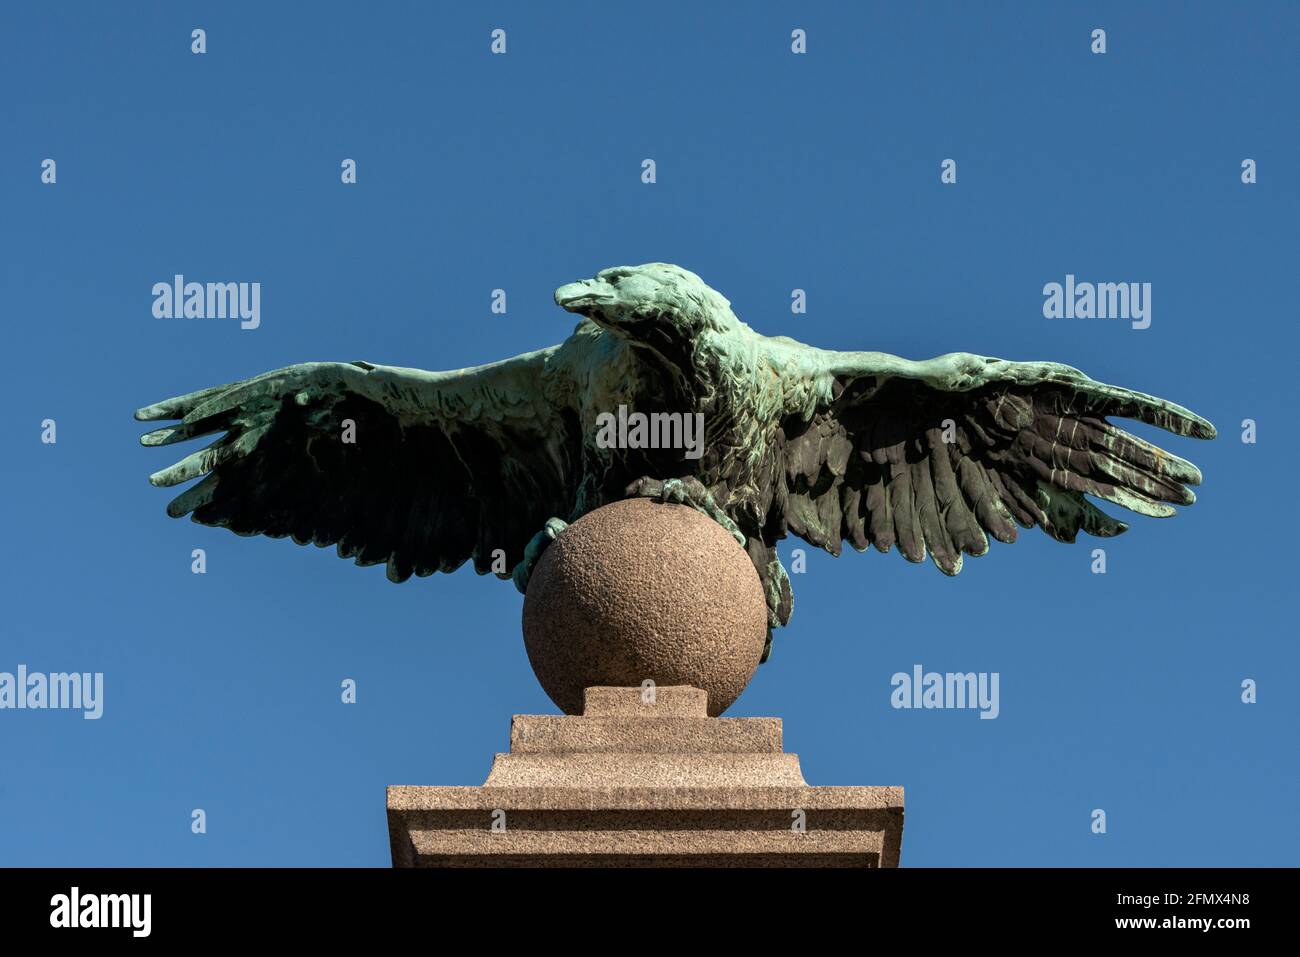 Cast iron sculpture eagle statue at the Eagle's Bridge, Sofia, Bulgaria Stock Photo